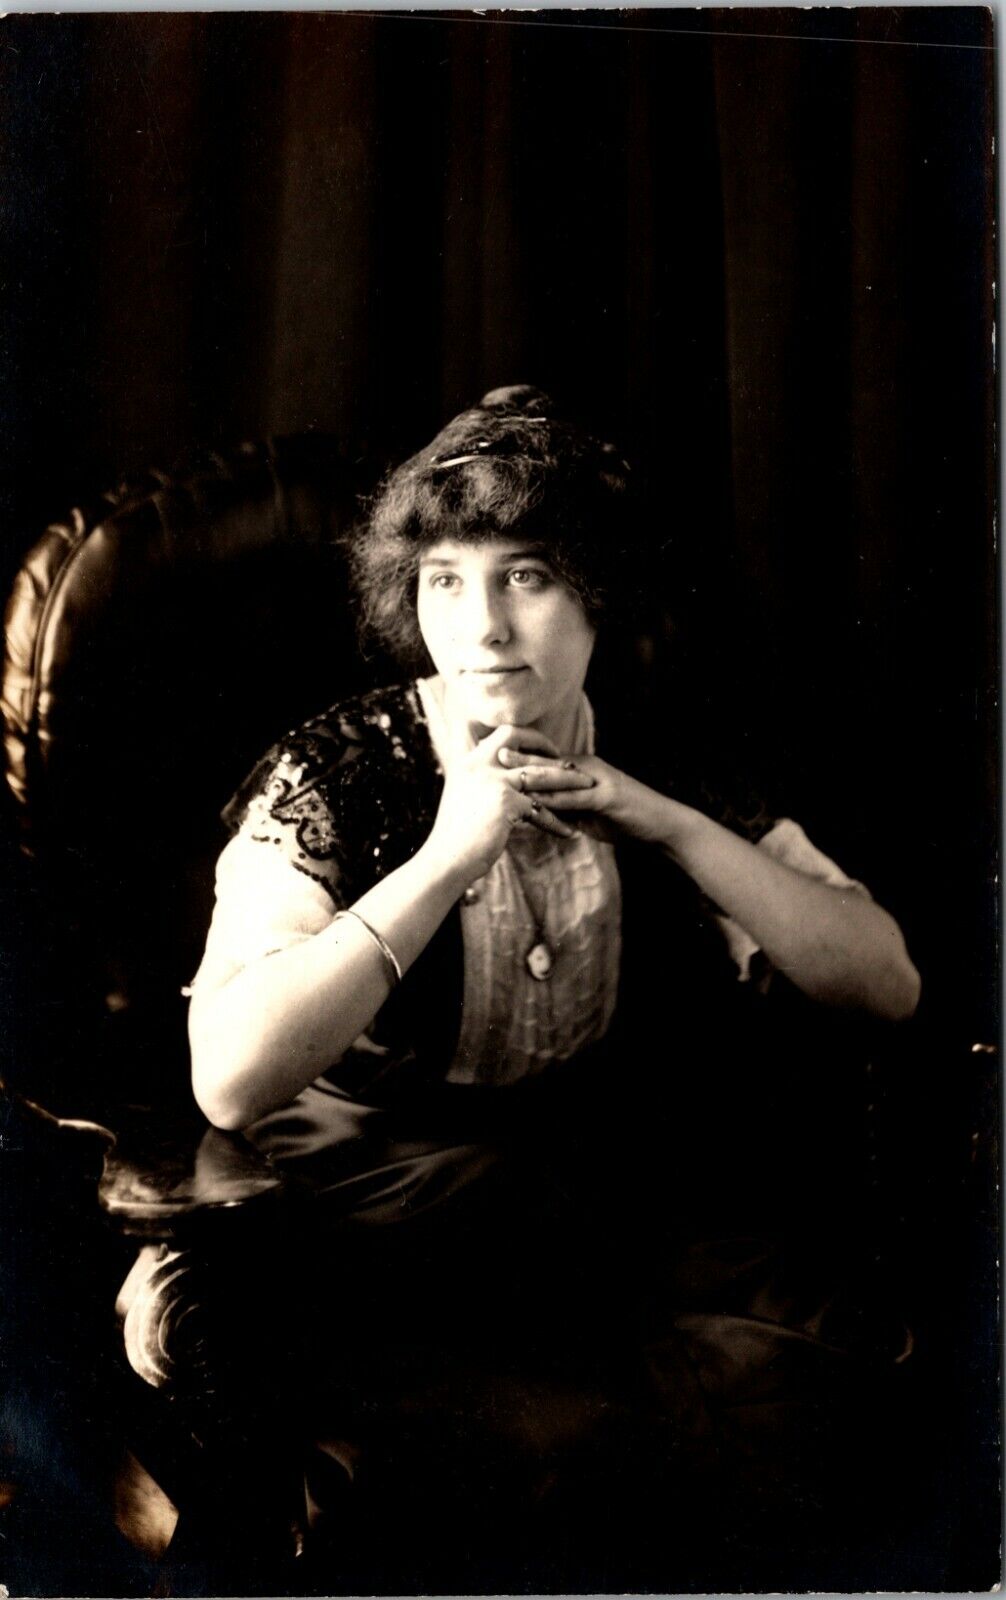 PORTRAIT OF A  PENSIVE WOMAN : RPPC : 1904-1918